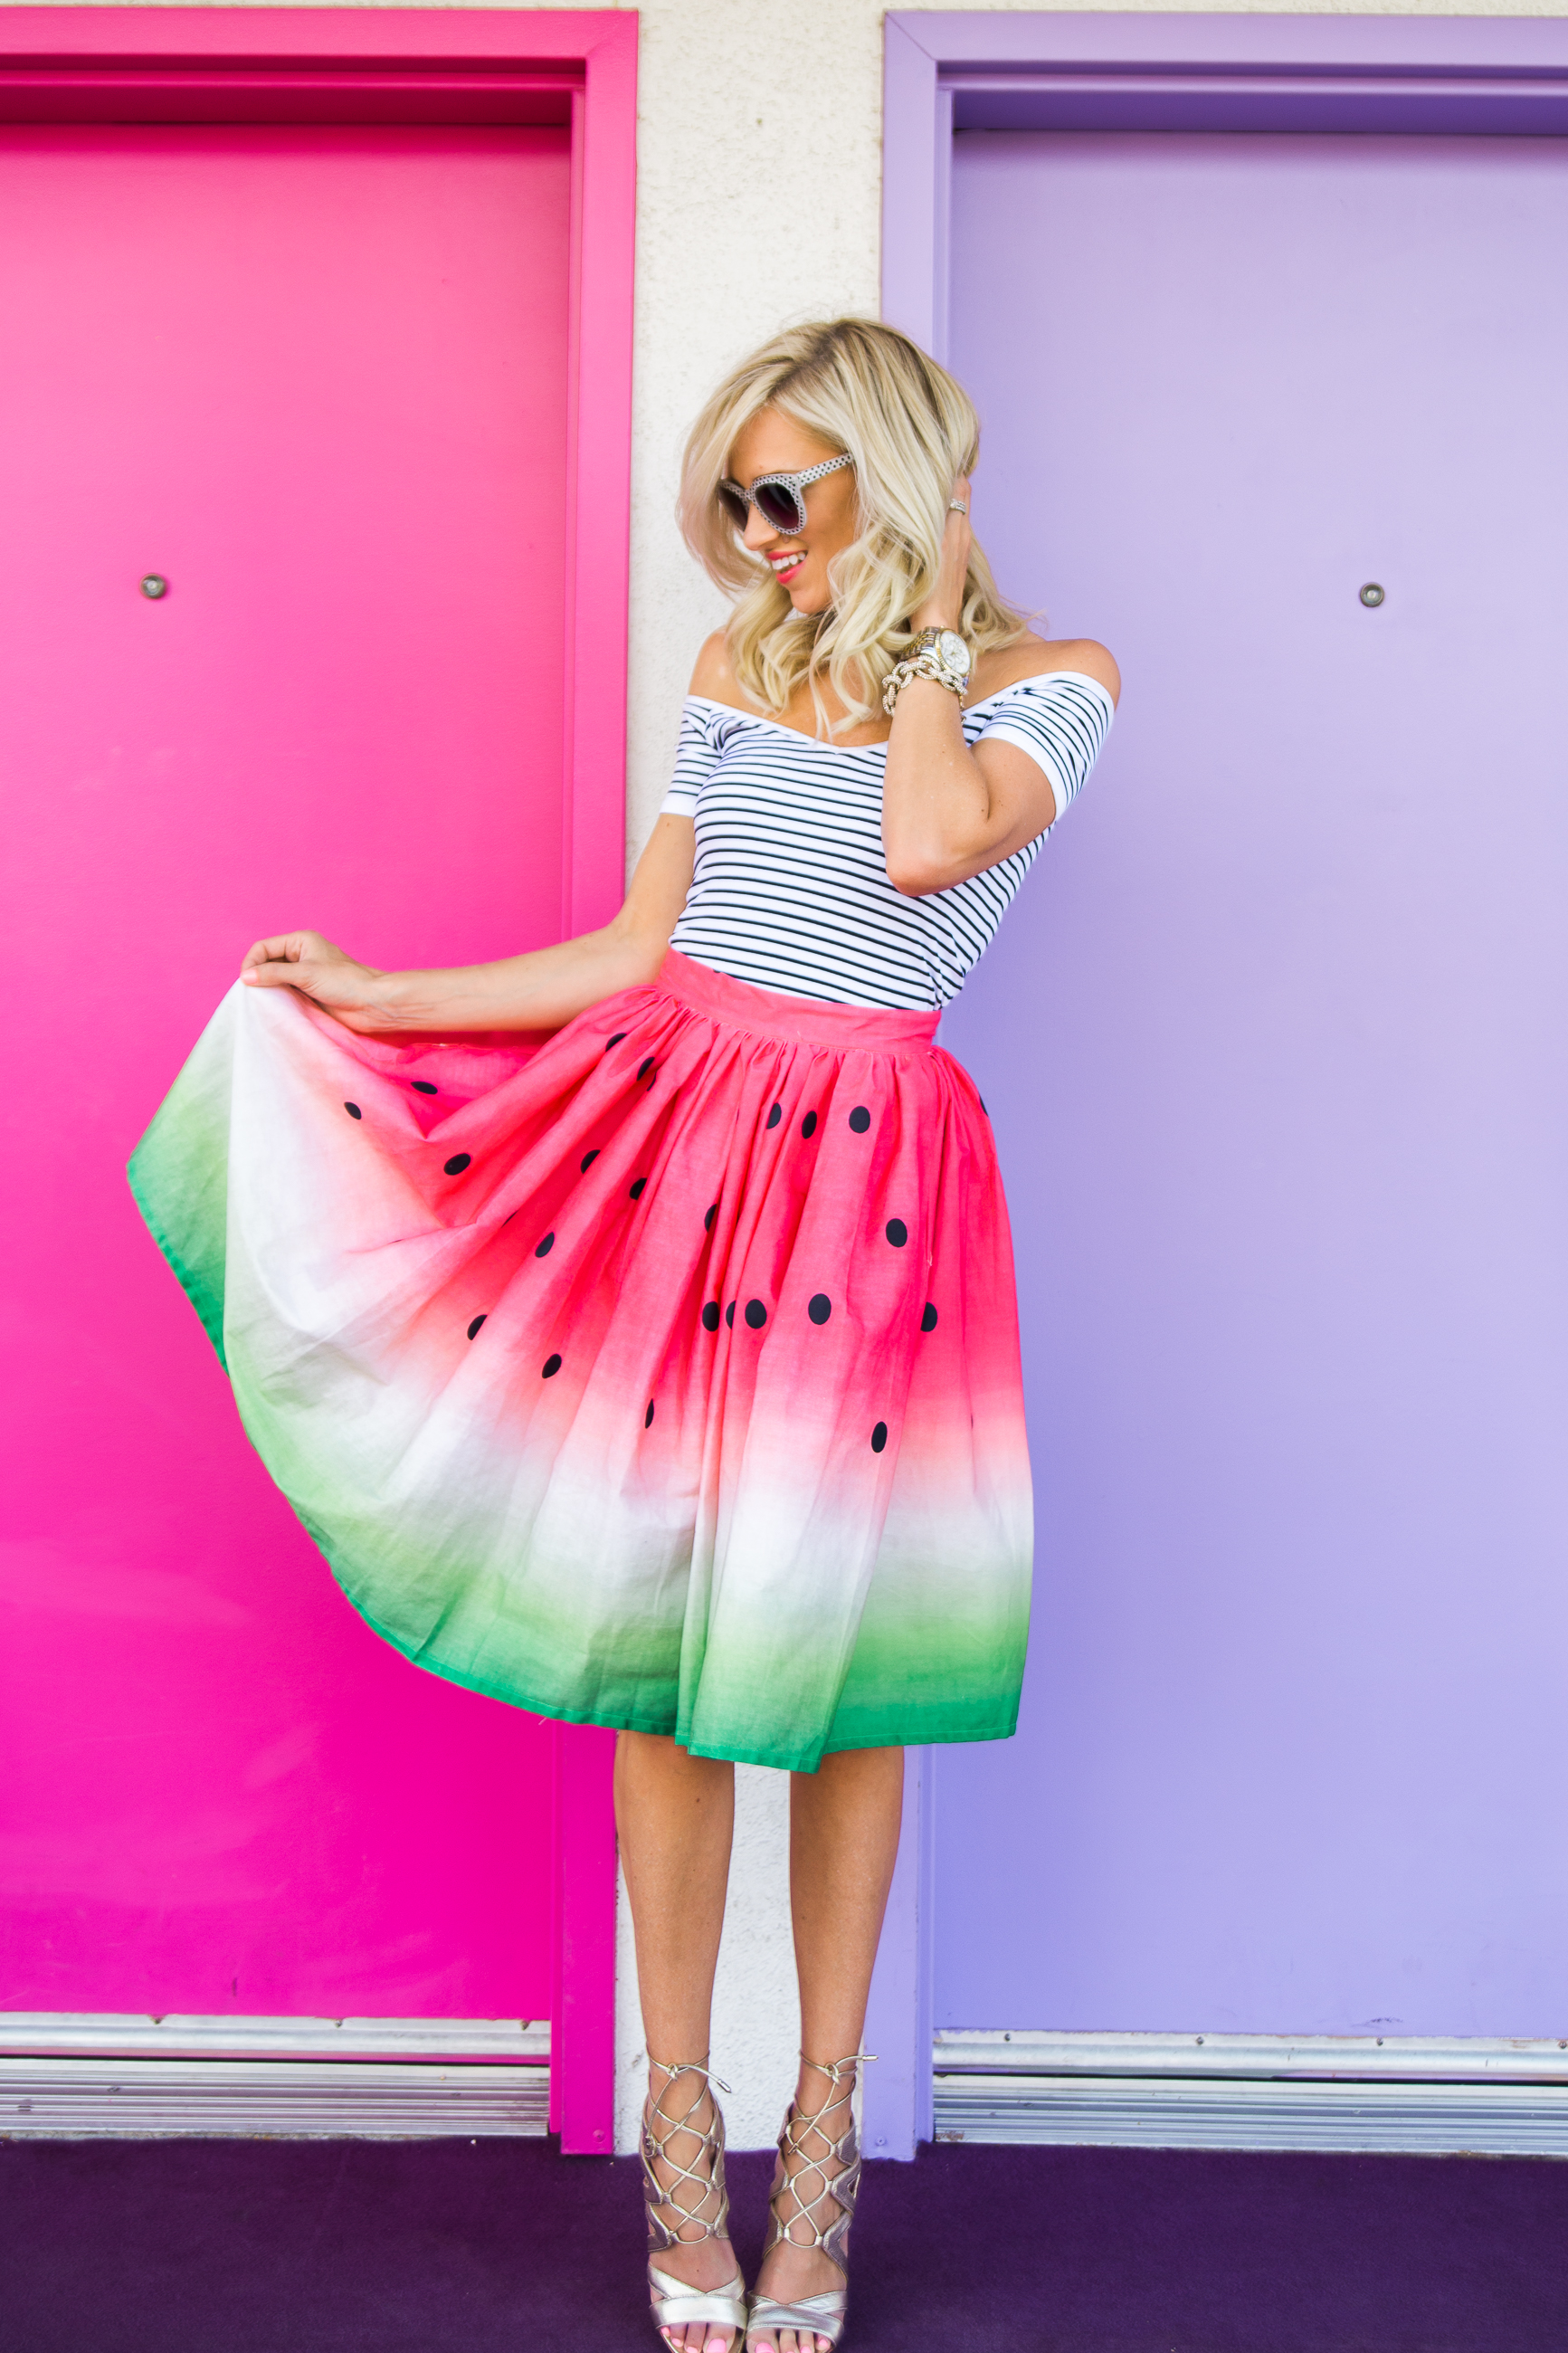 Watermelon Skirt